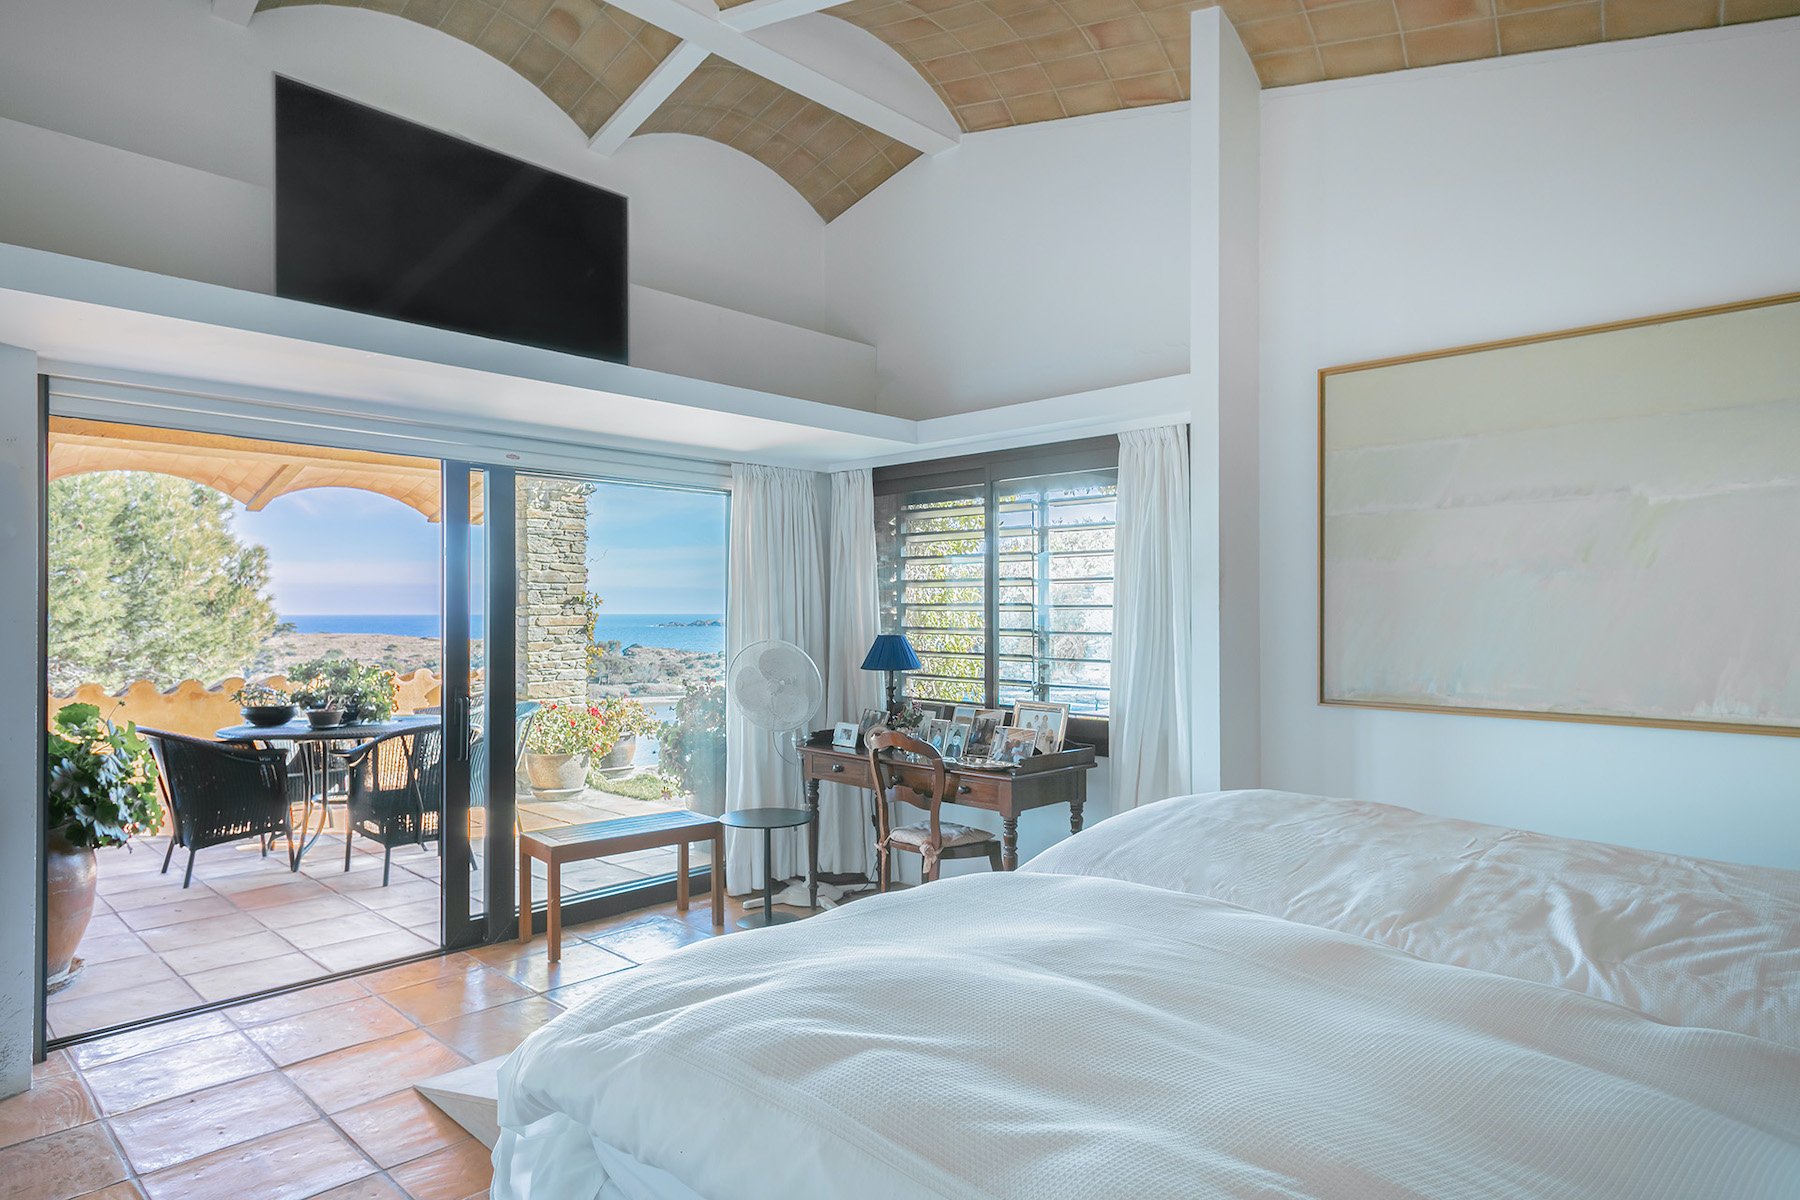 Luxury villa in Cadaqués, Spain sea view overlooking the Mediterranean Sea